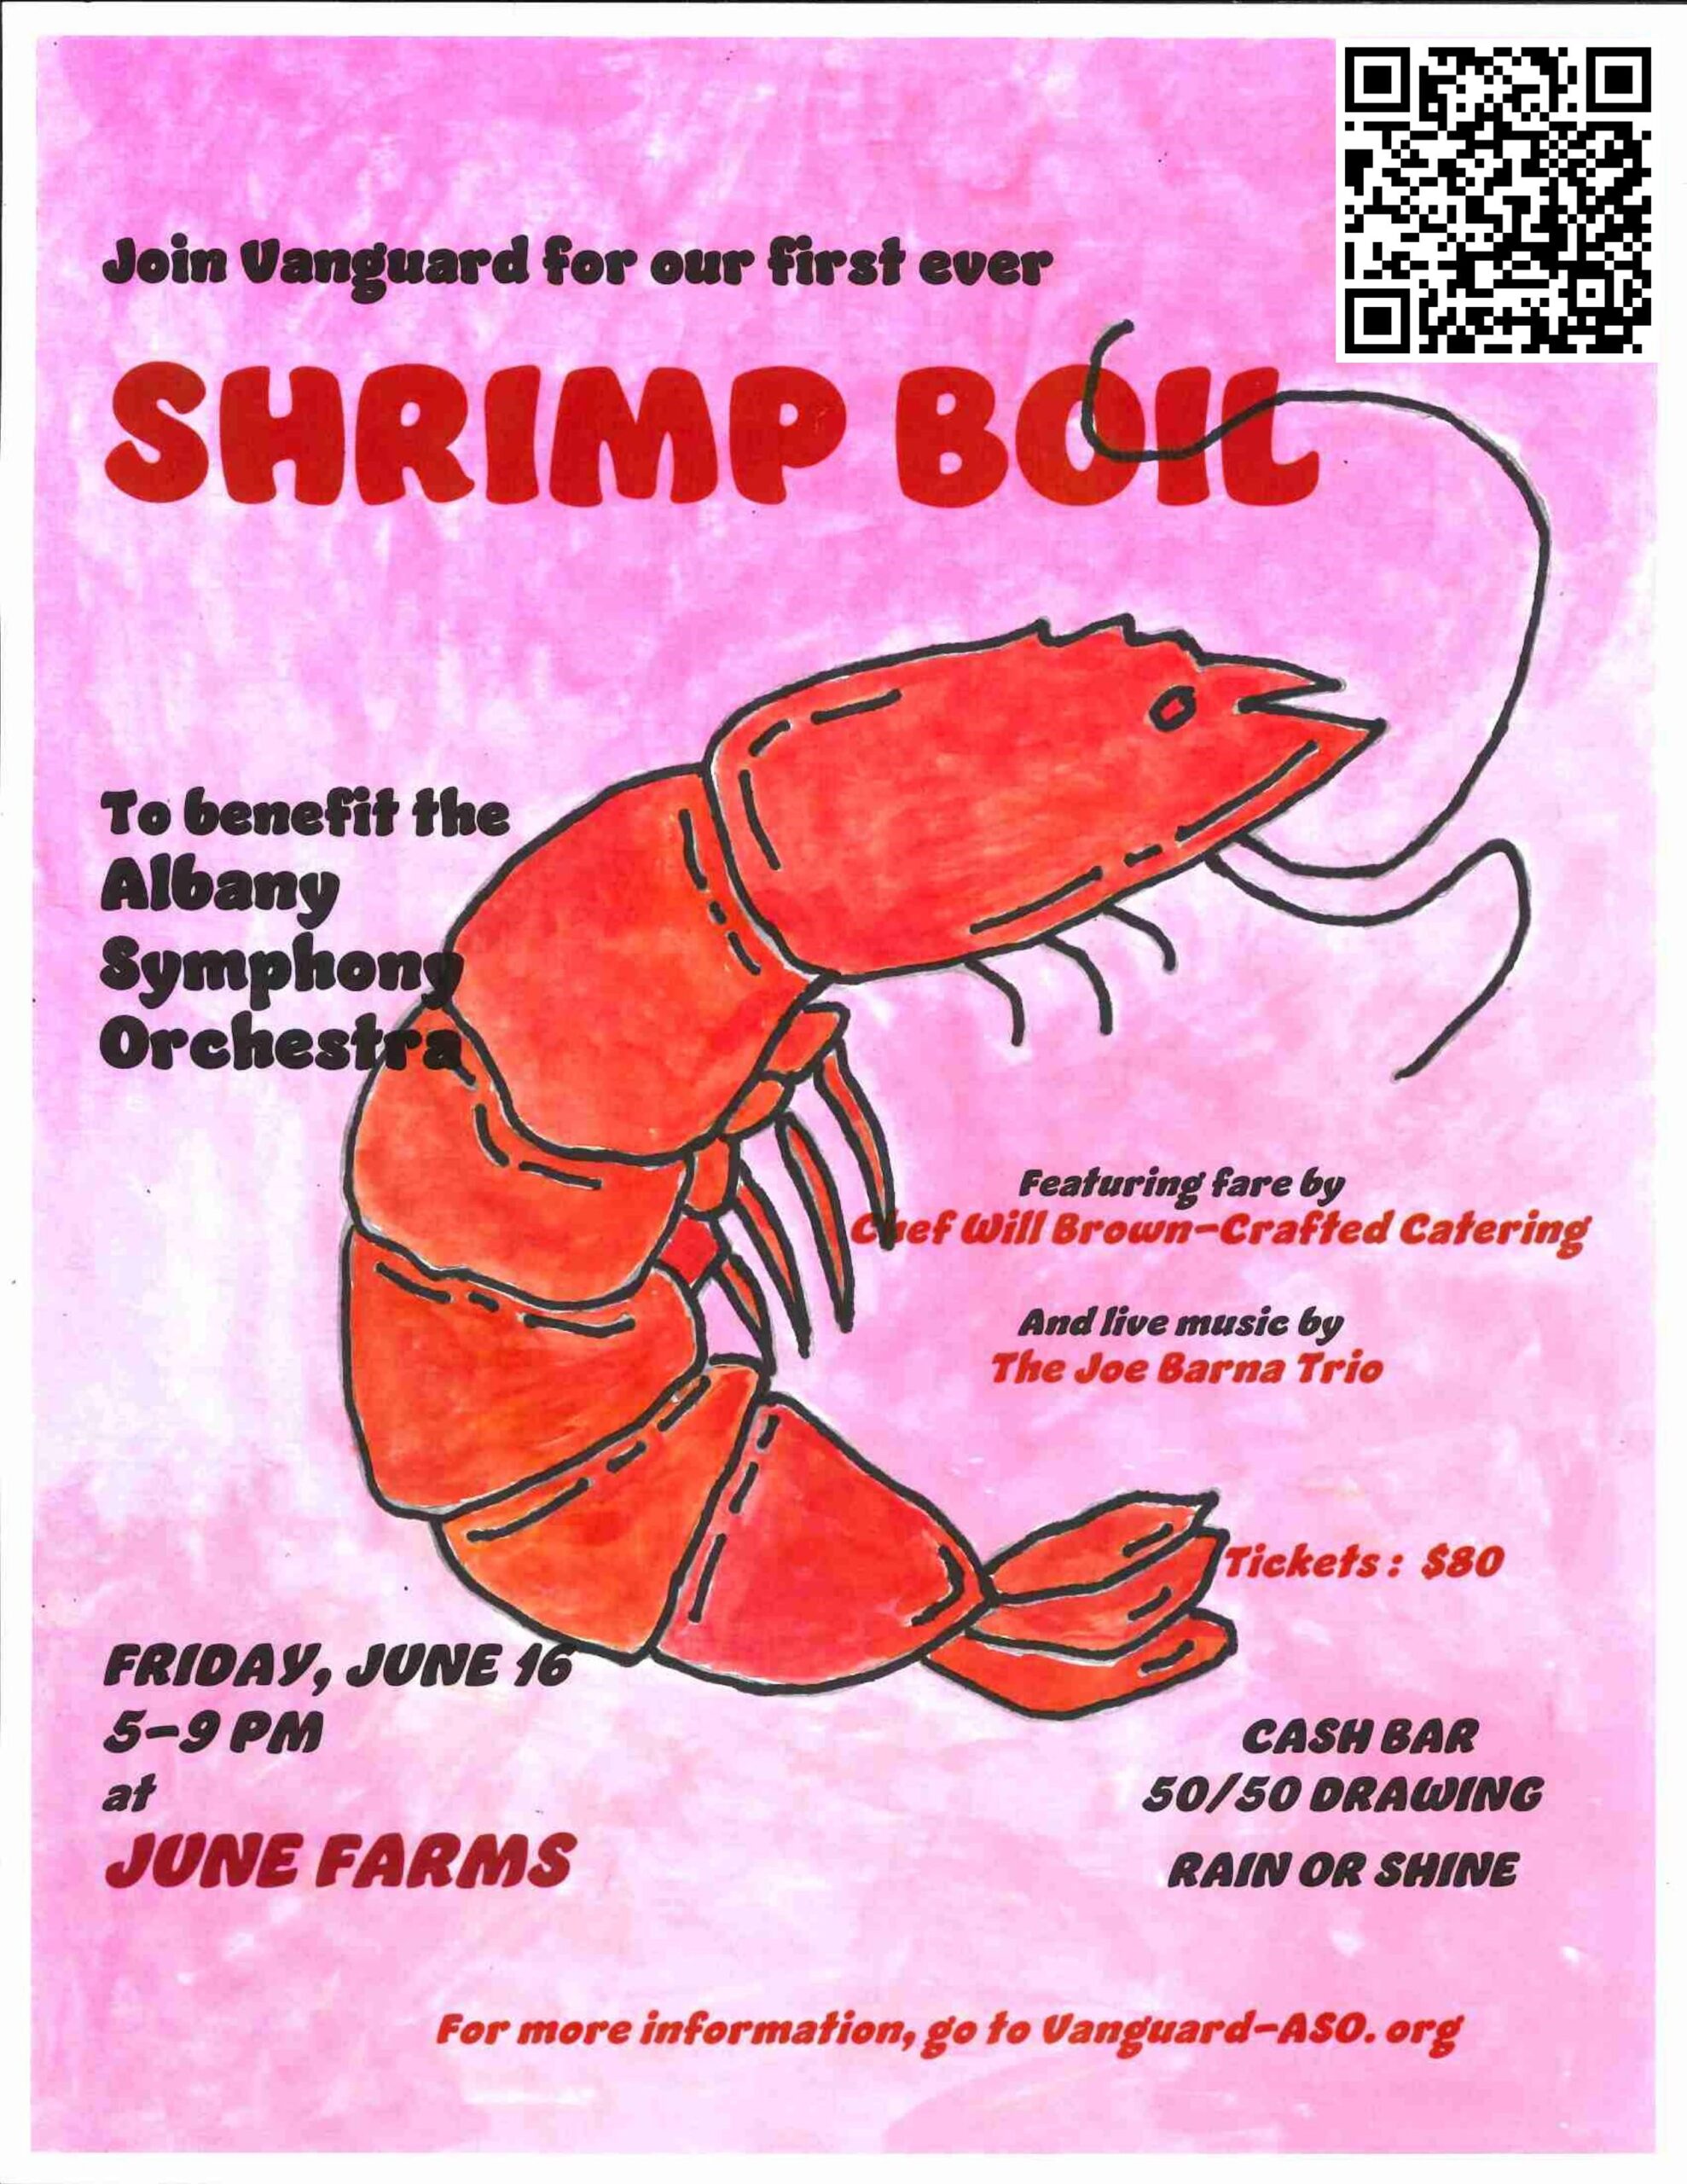 Shrimp Boil Flyer with QR